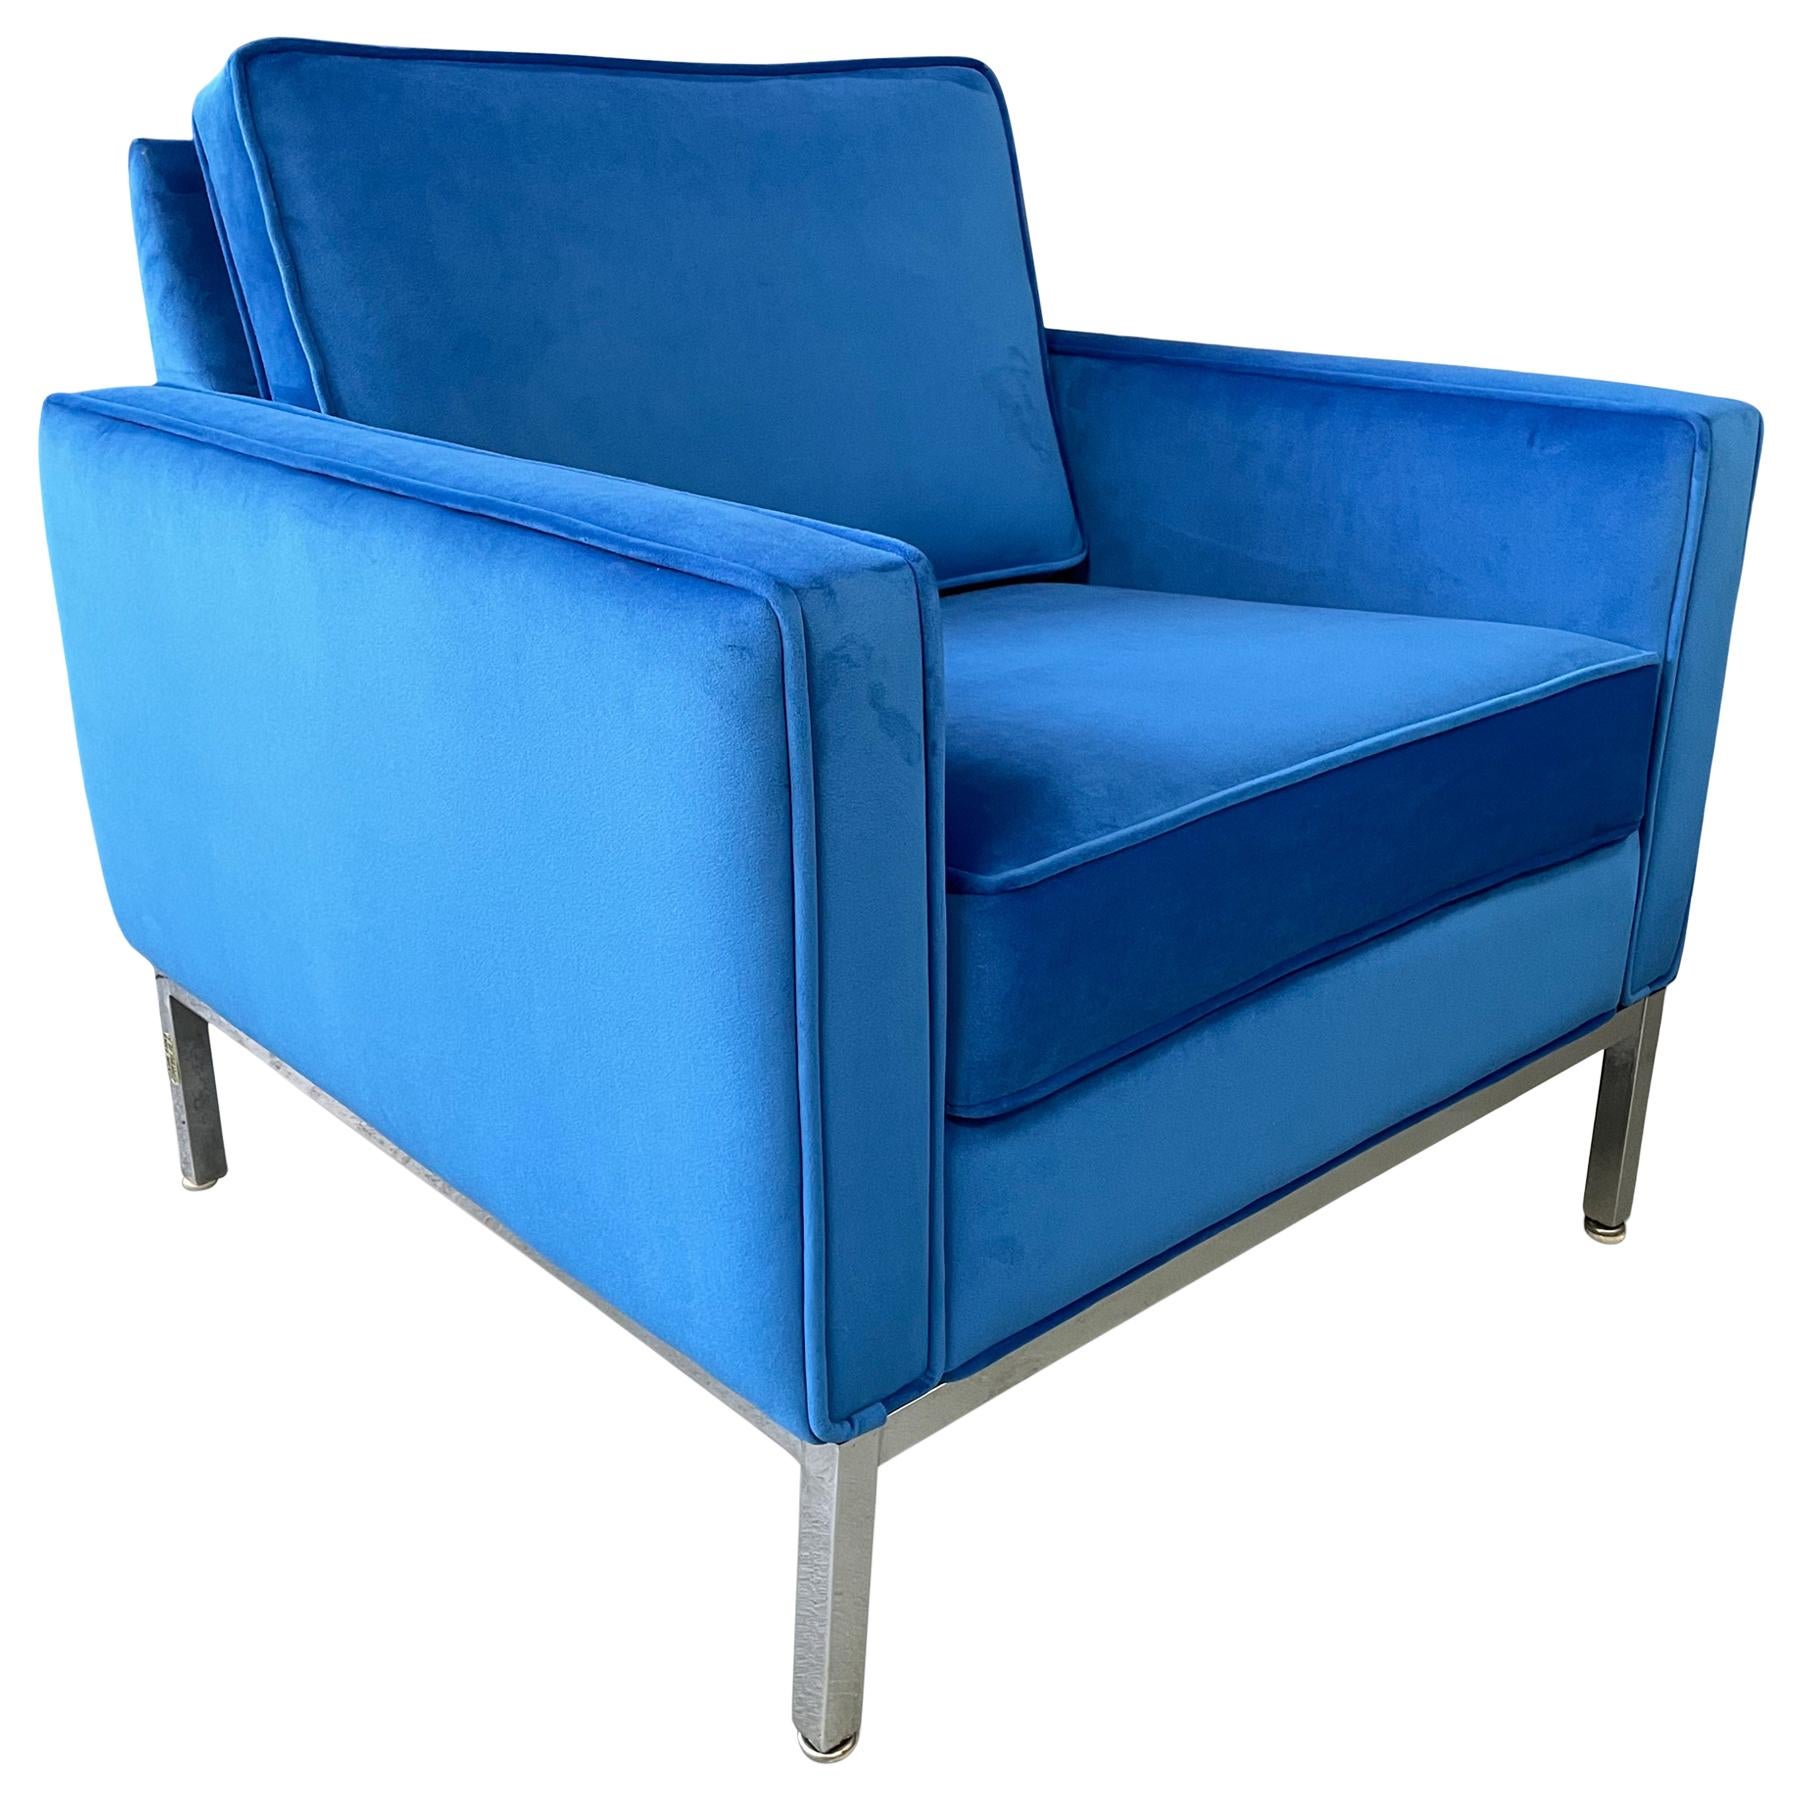 Steelcase Chromed Steel Lounge Chair Draped in Blue Velvet Midcentury